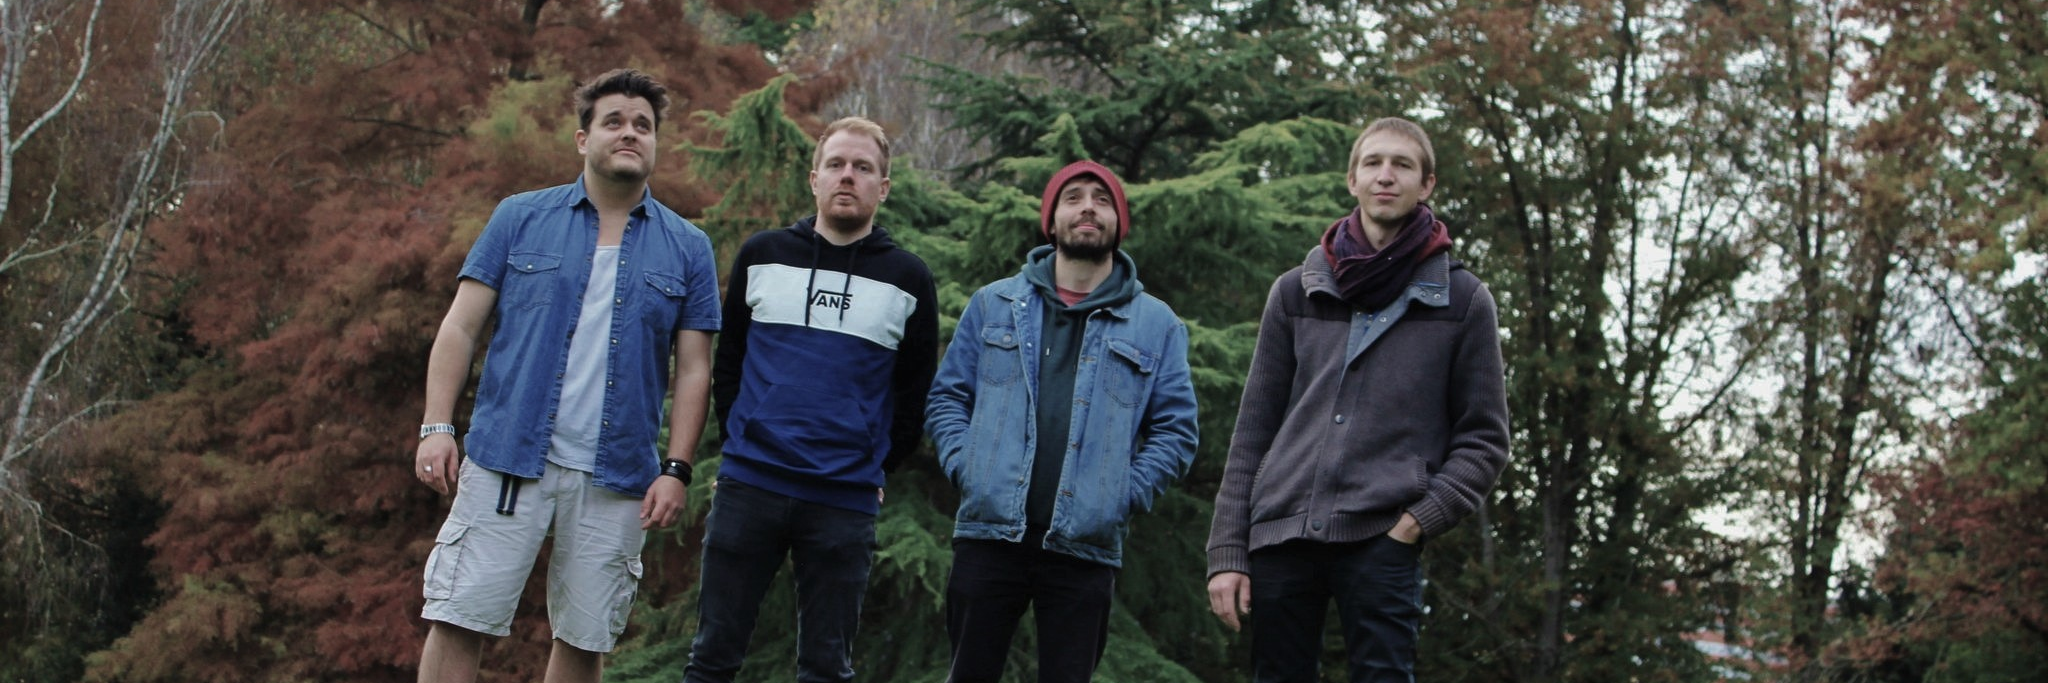 Fallen Leaves Garden, groupe de musique Rock en représentation à Ille et Vilaine - photo de couverture